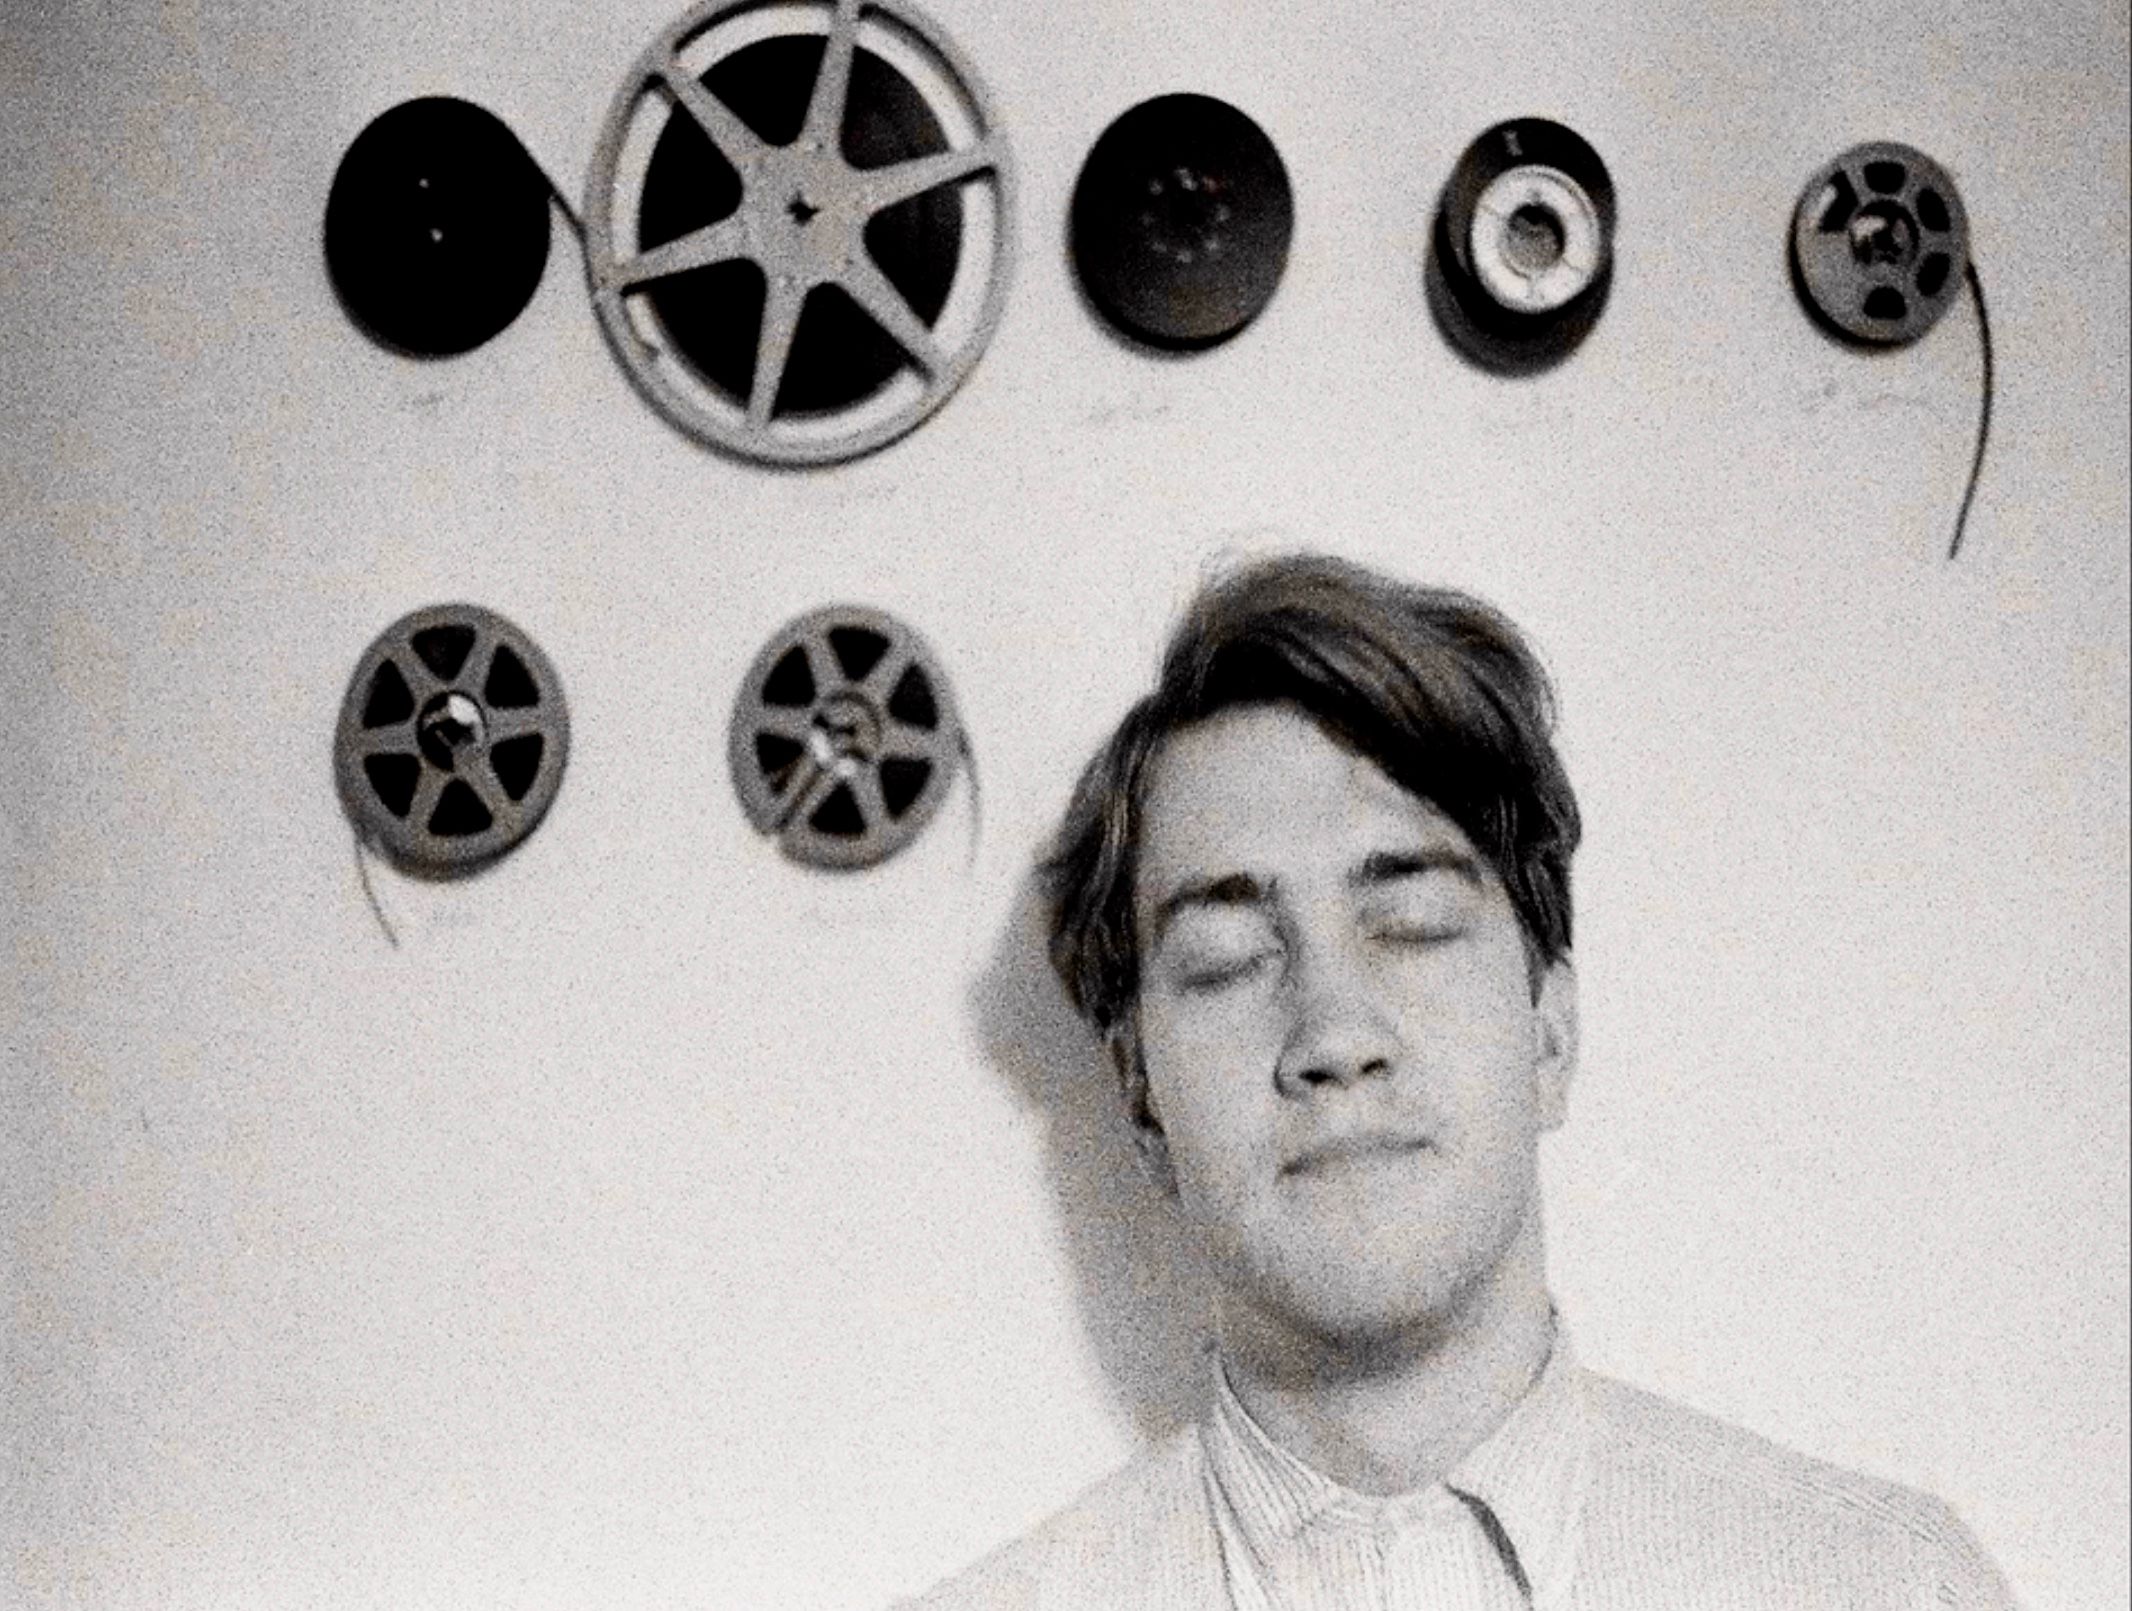 Dans The Art Life, on nous présente le David Lynch pré-cinéma, notamment en tant qu'artiste plasticien.